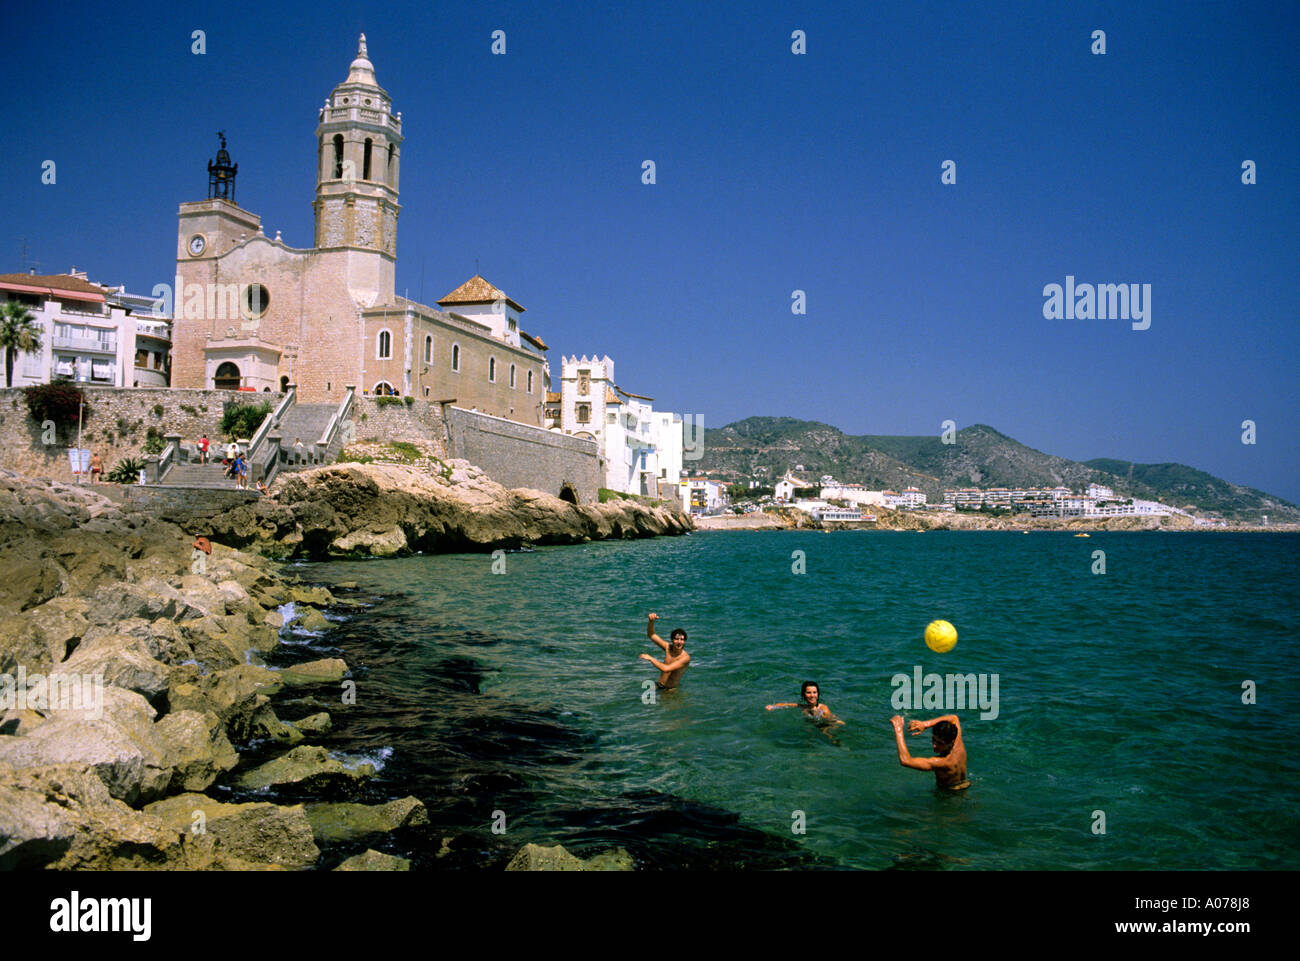 Les jeunes jouent dans la mer en face d'une église catholique à Sitges, Espagne. Banque D'Images